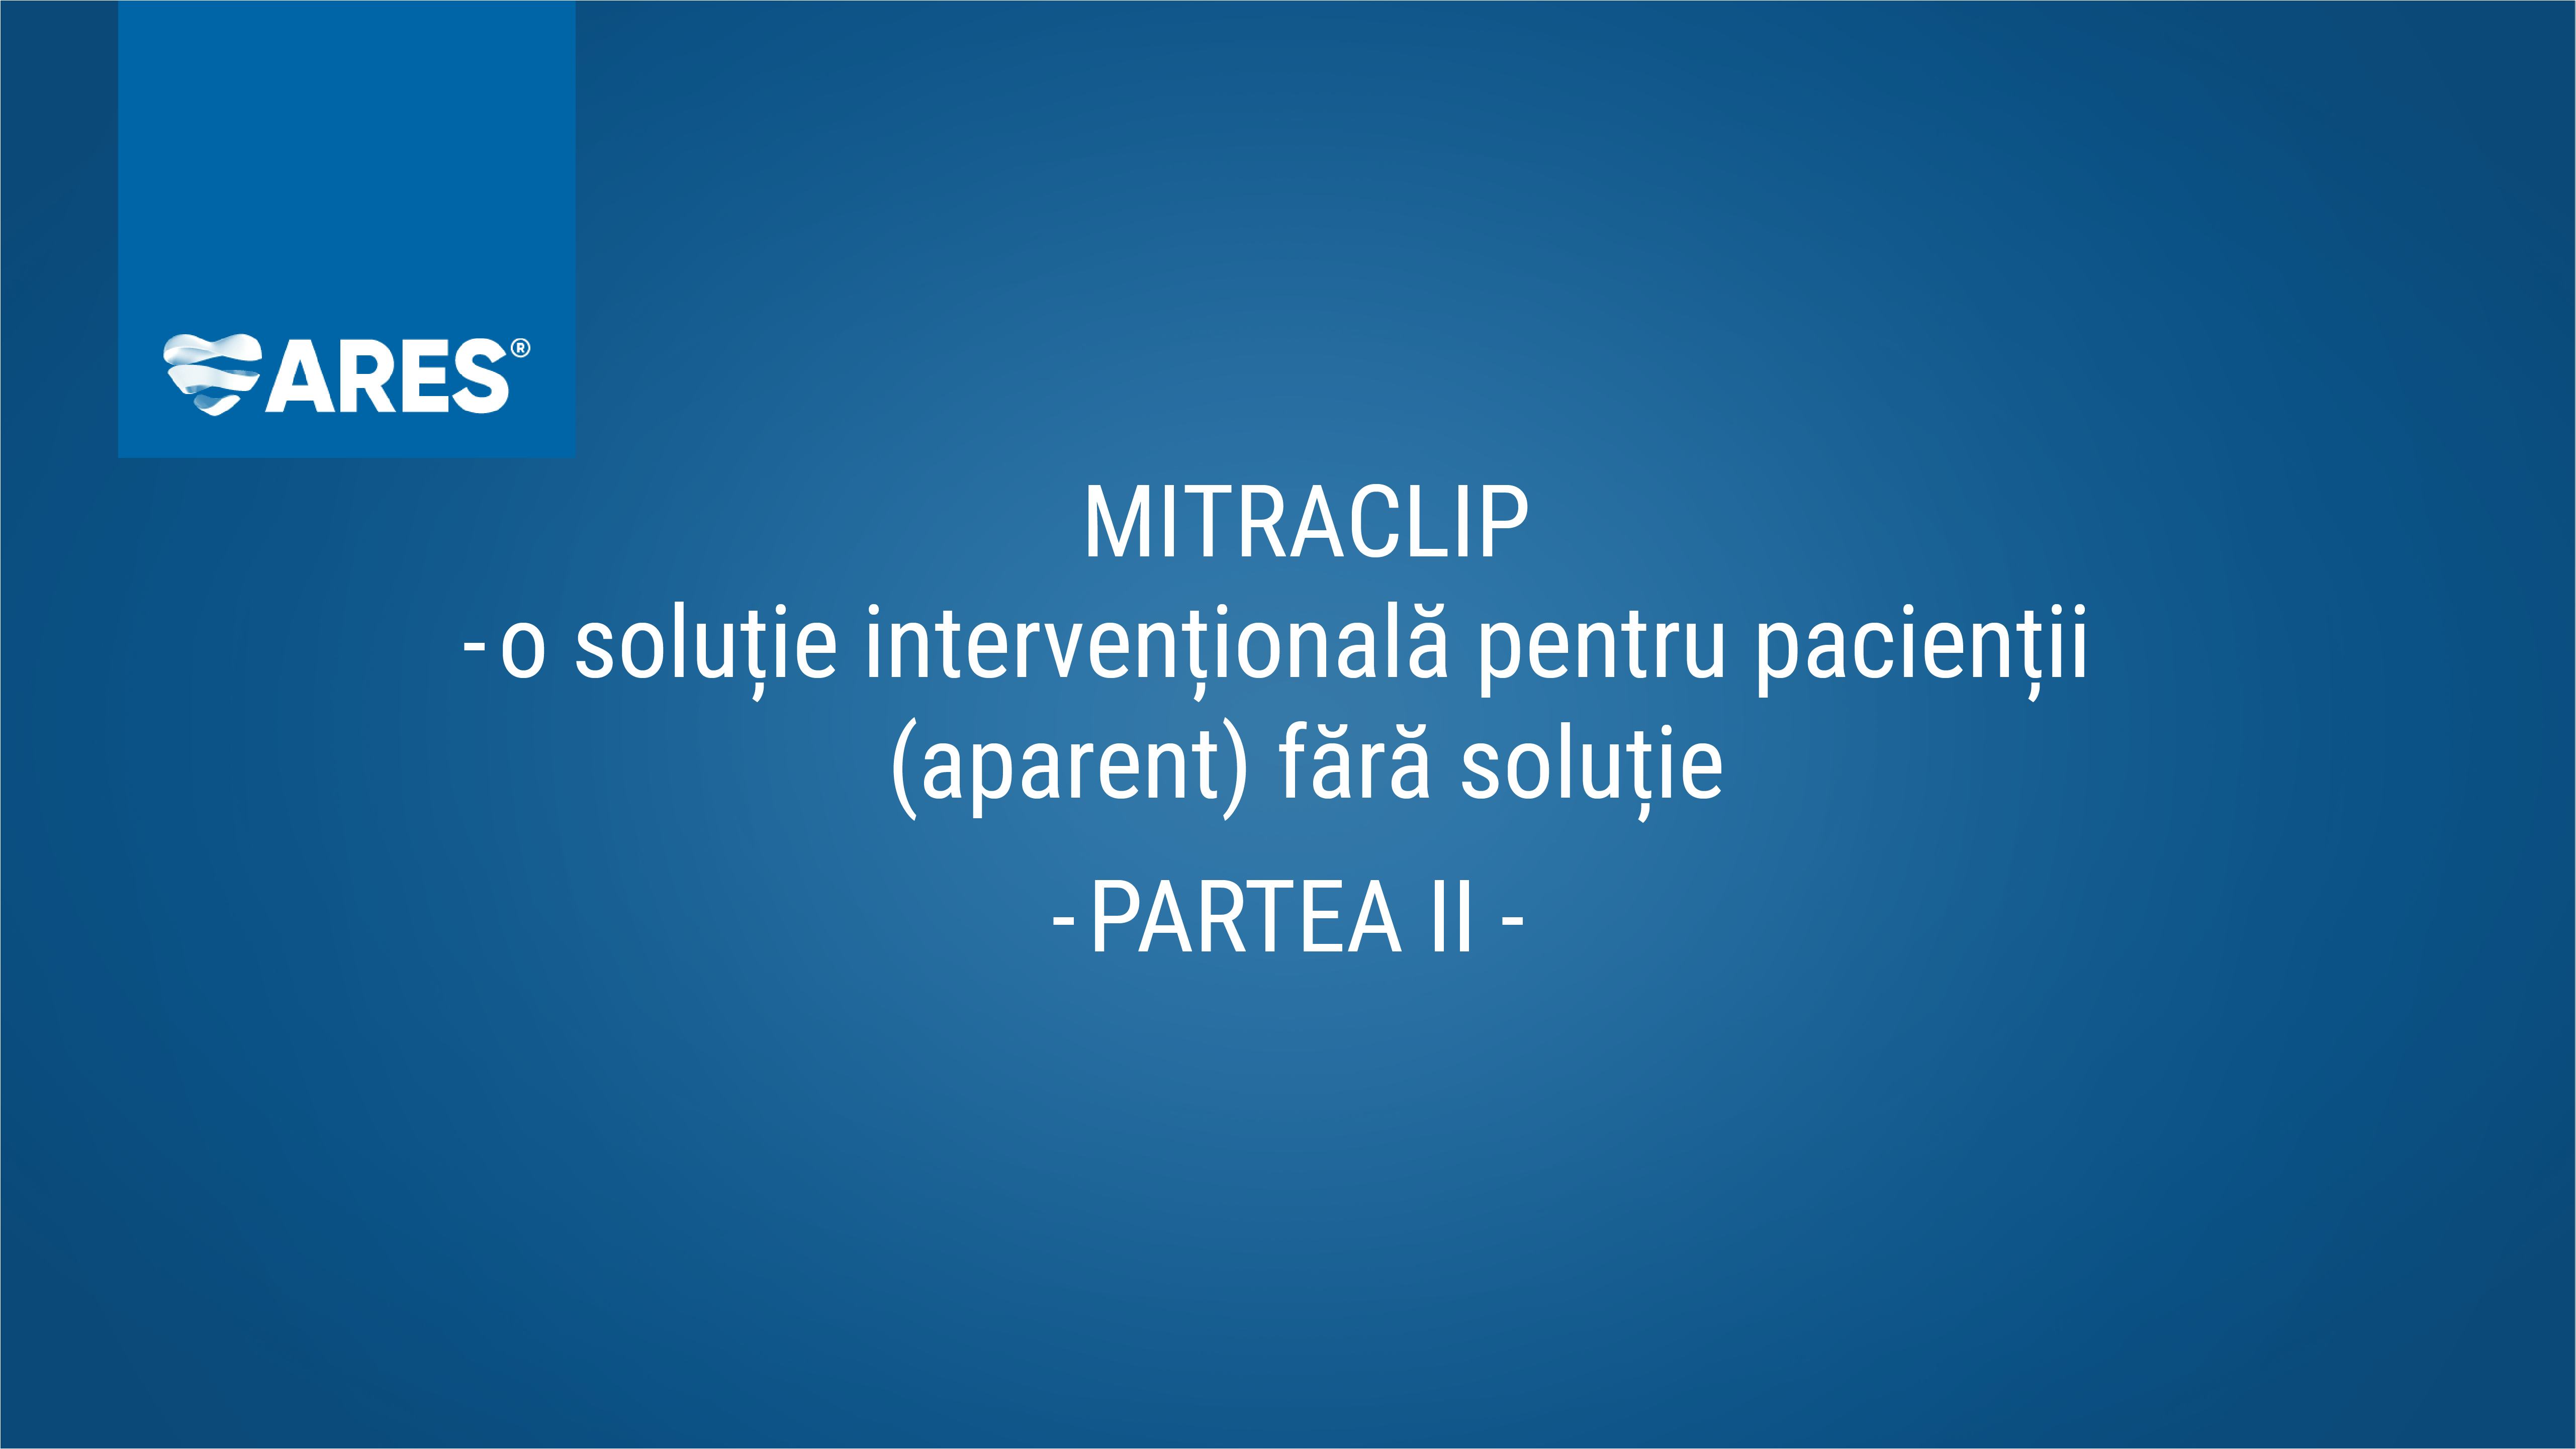 Repararea percutană a regurgitării mitrale cu dispozitiv Mitraclip | Partea II |  Dr. Iulian Călin